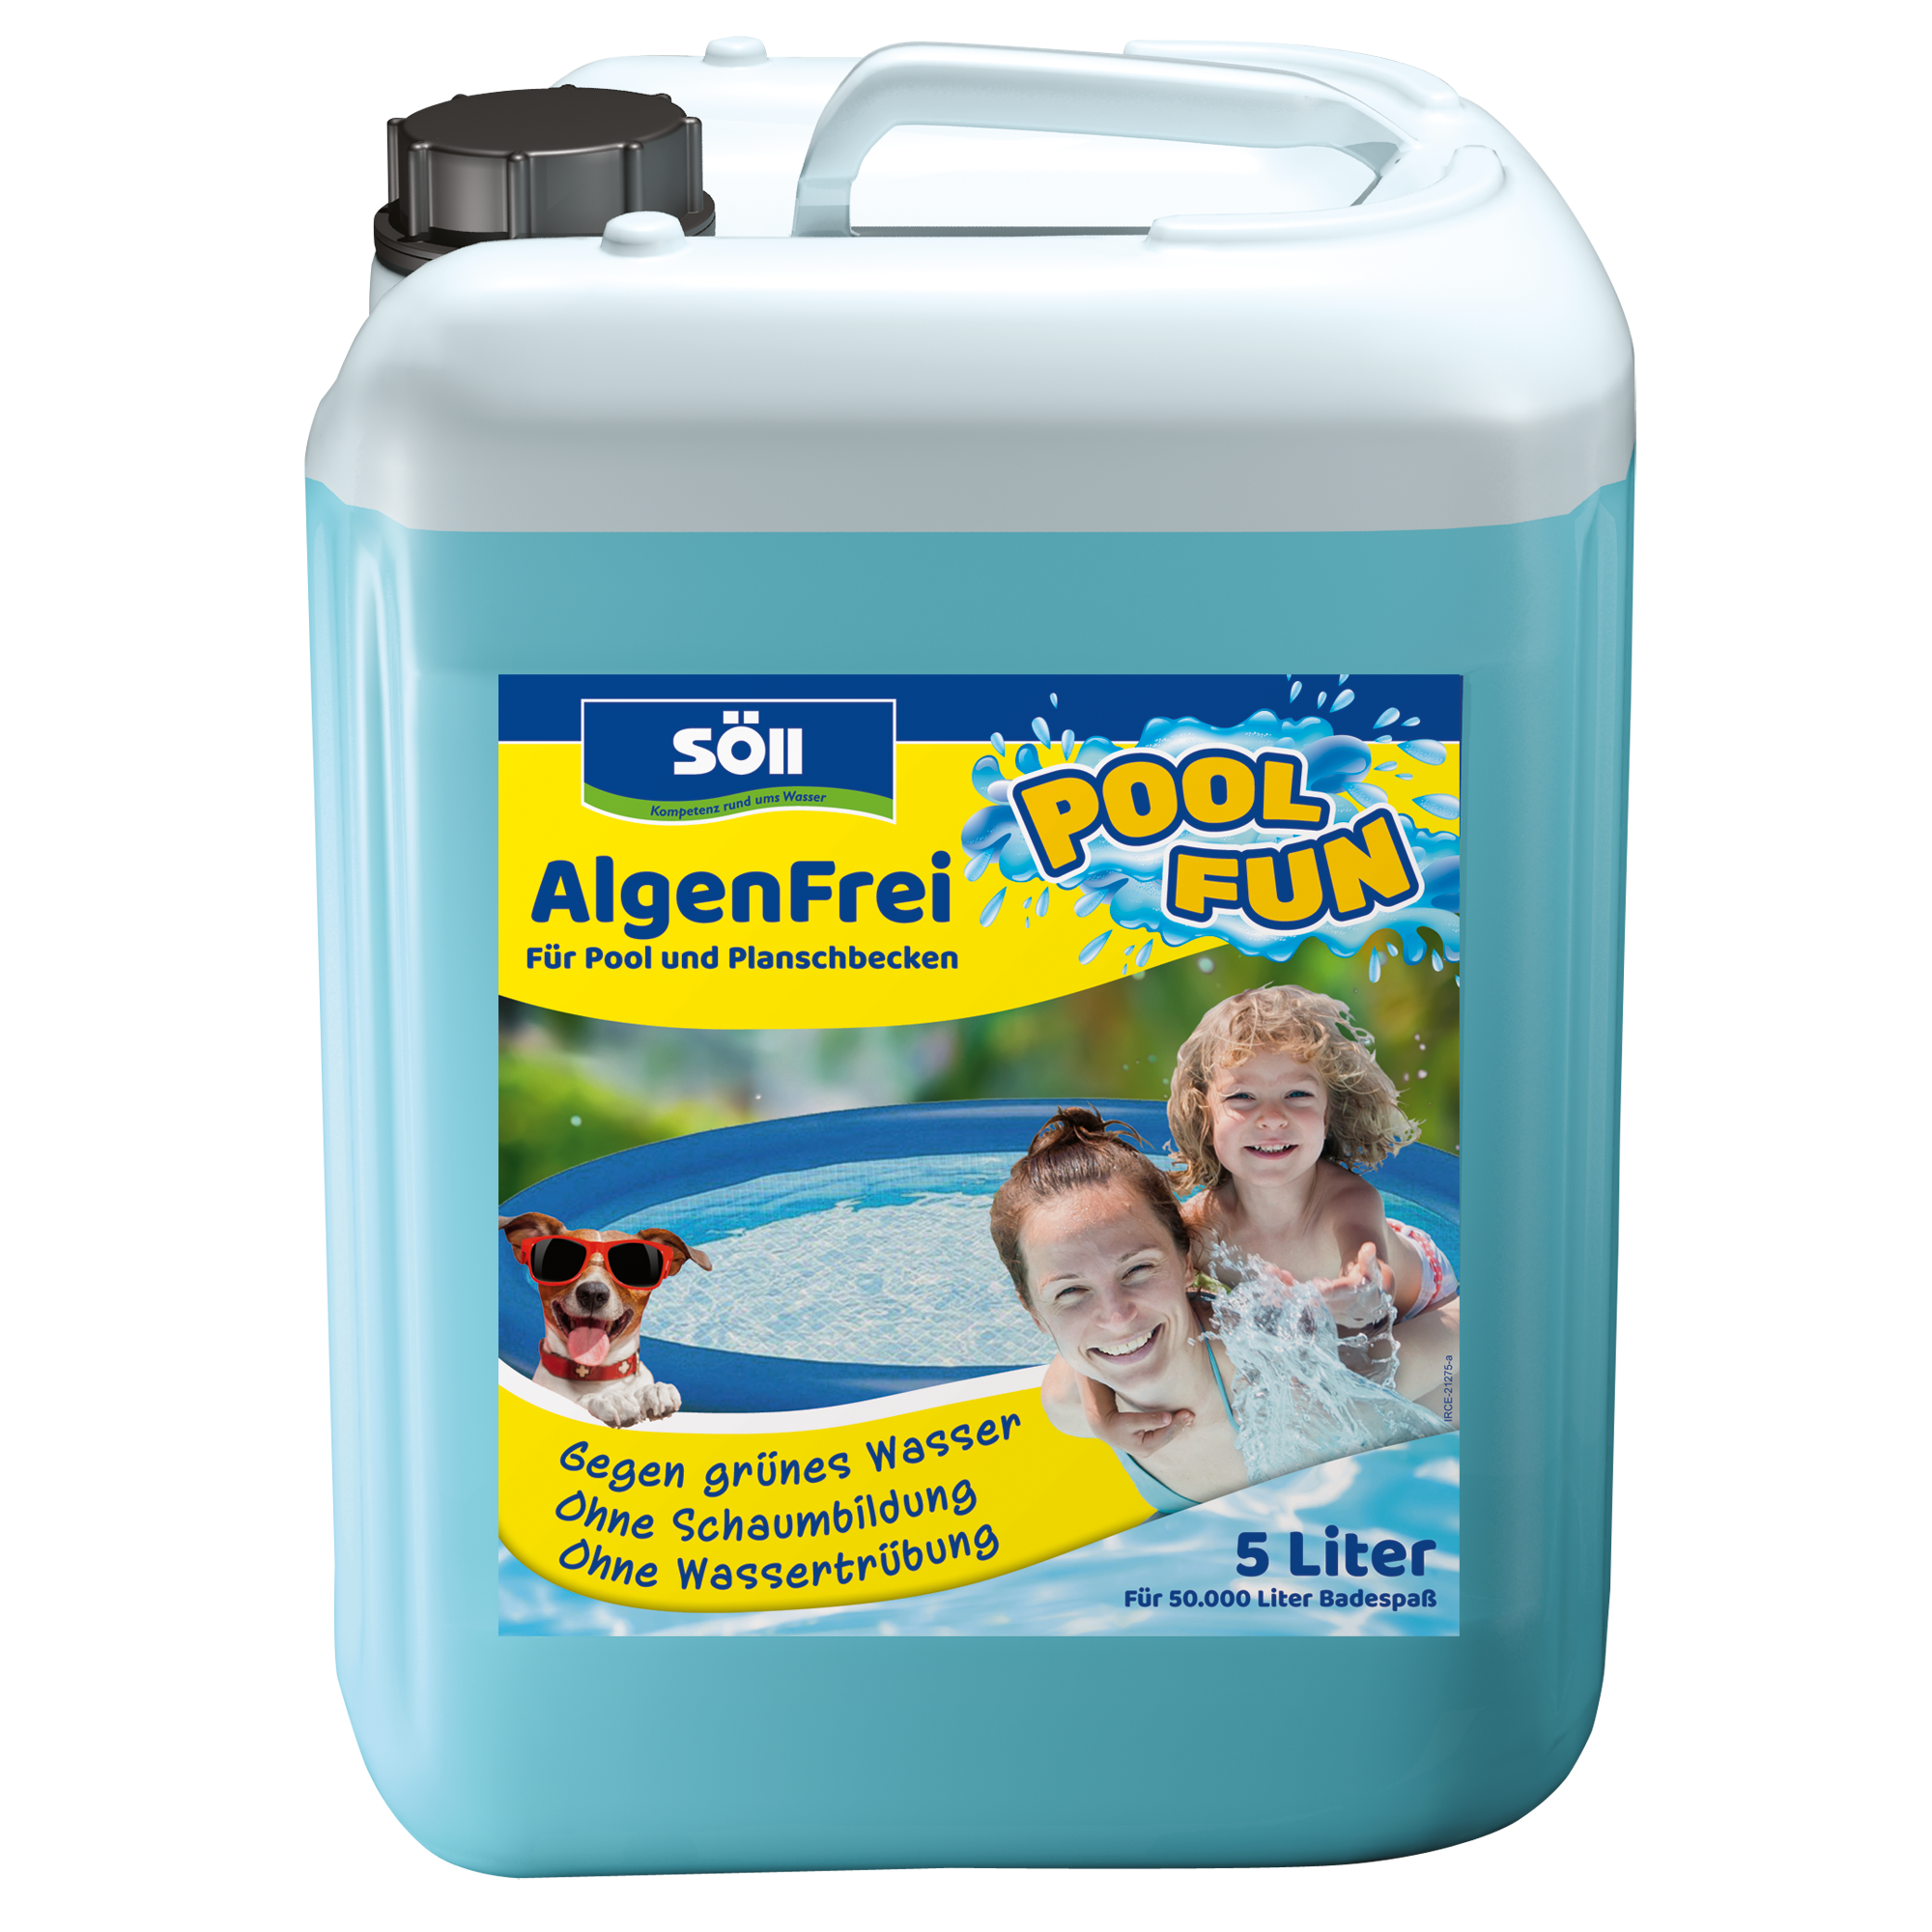 Algenentferner 'AlgenFrei' 5 Liter + product picture